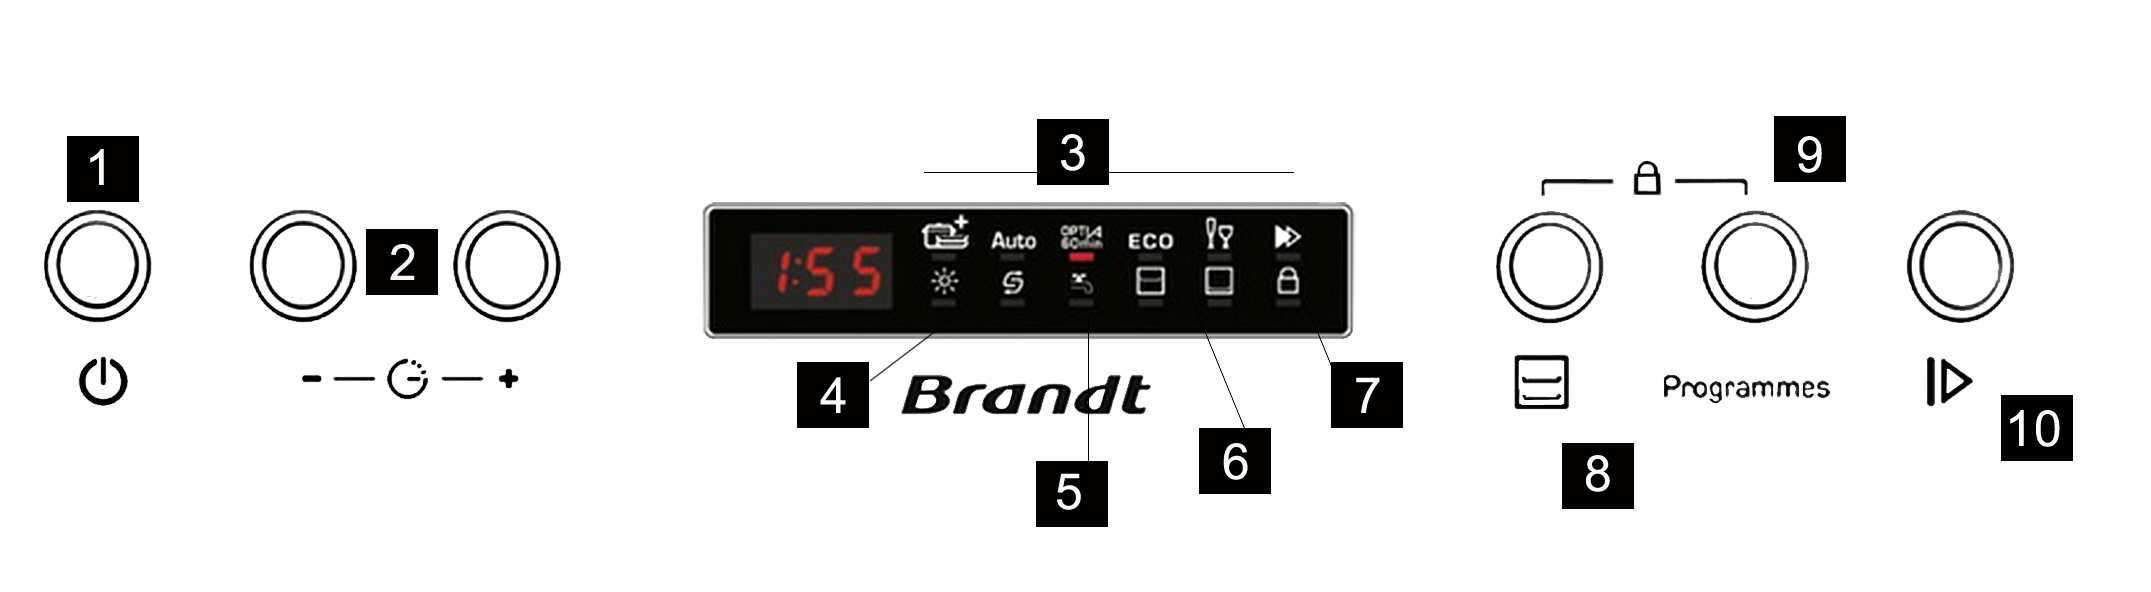 7 Ovládací panel (VH1542X) 1 Tlačítko On/Off: slouží k aktivaci/deaktivaci provozu spotřebiče. 2 Tlačítka pro nastavení funkce Odložené spuštění programu.